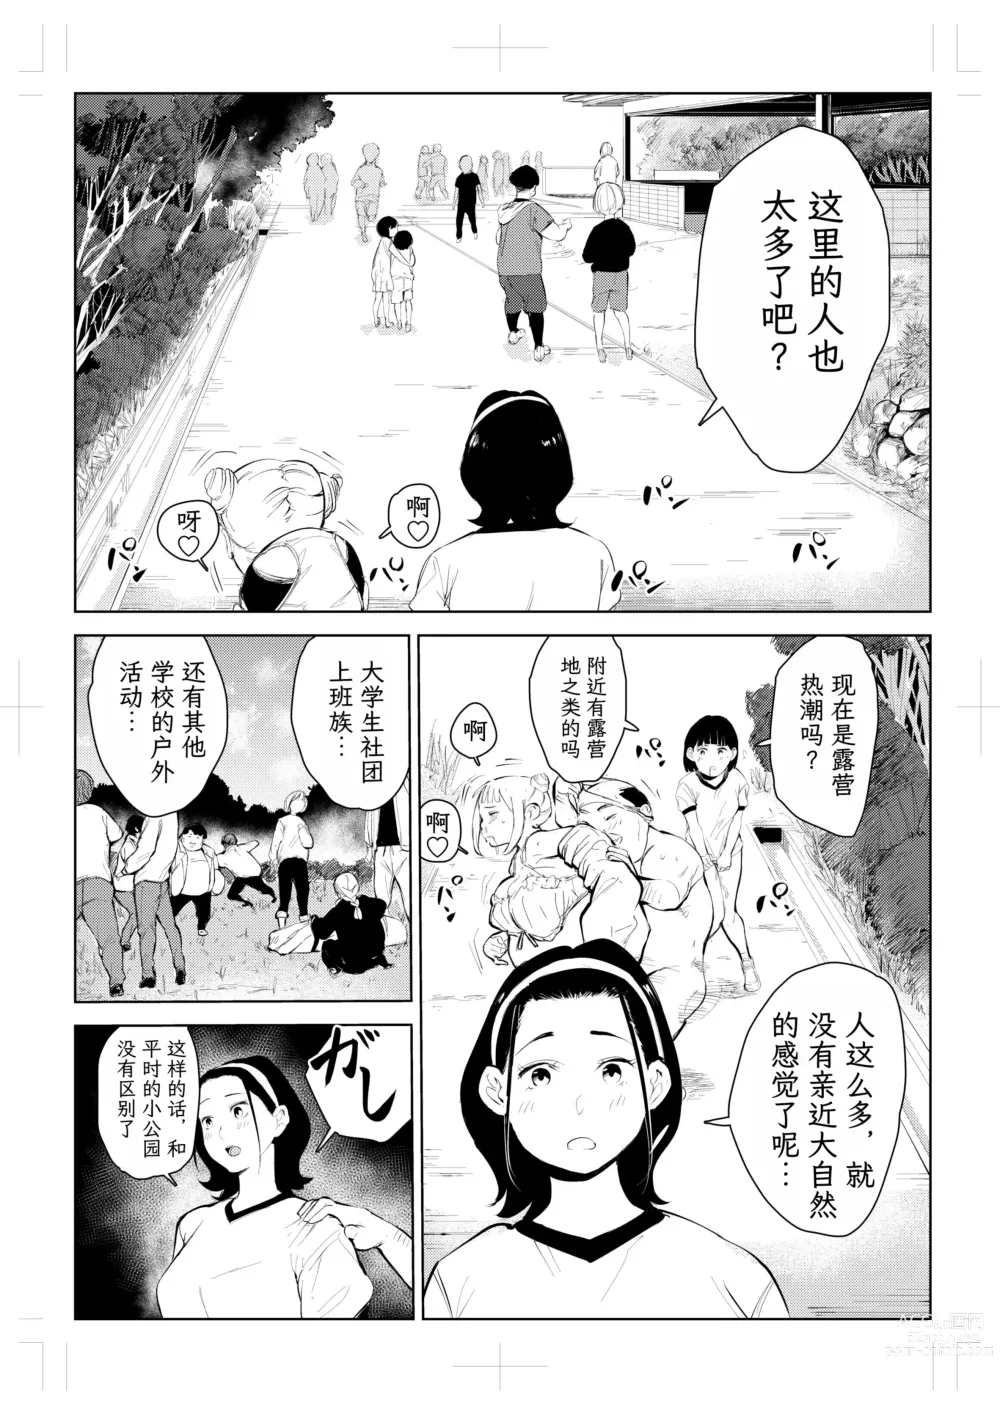 Page 34 of doujinshi 40-sai no Mahoutsukai 4